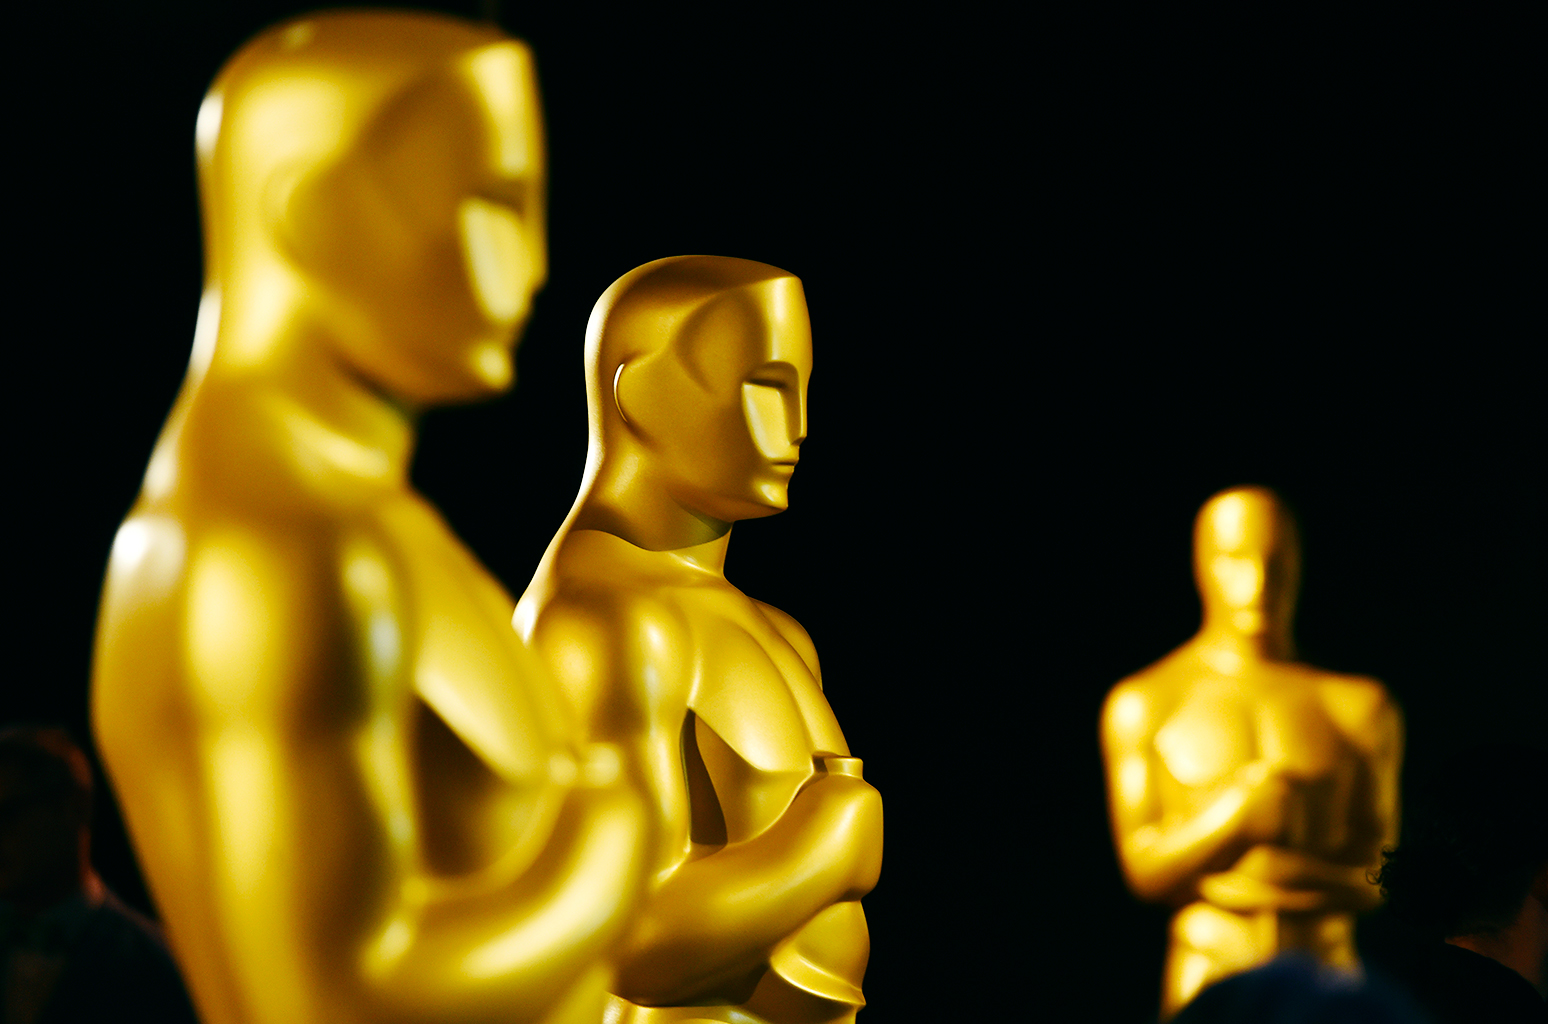 آنتونی هاپکینز و فرانسیس مک دورمند بهترین بازیگران سال اسکار ۲۰۲۱ شدند